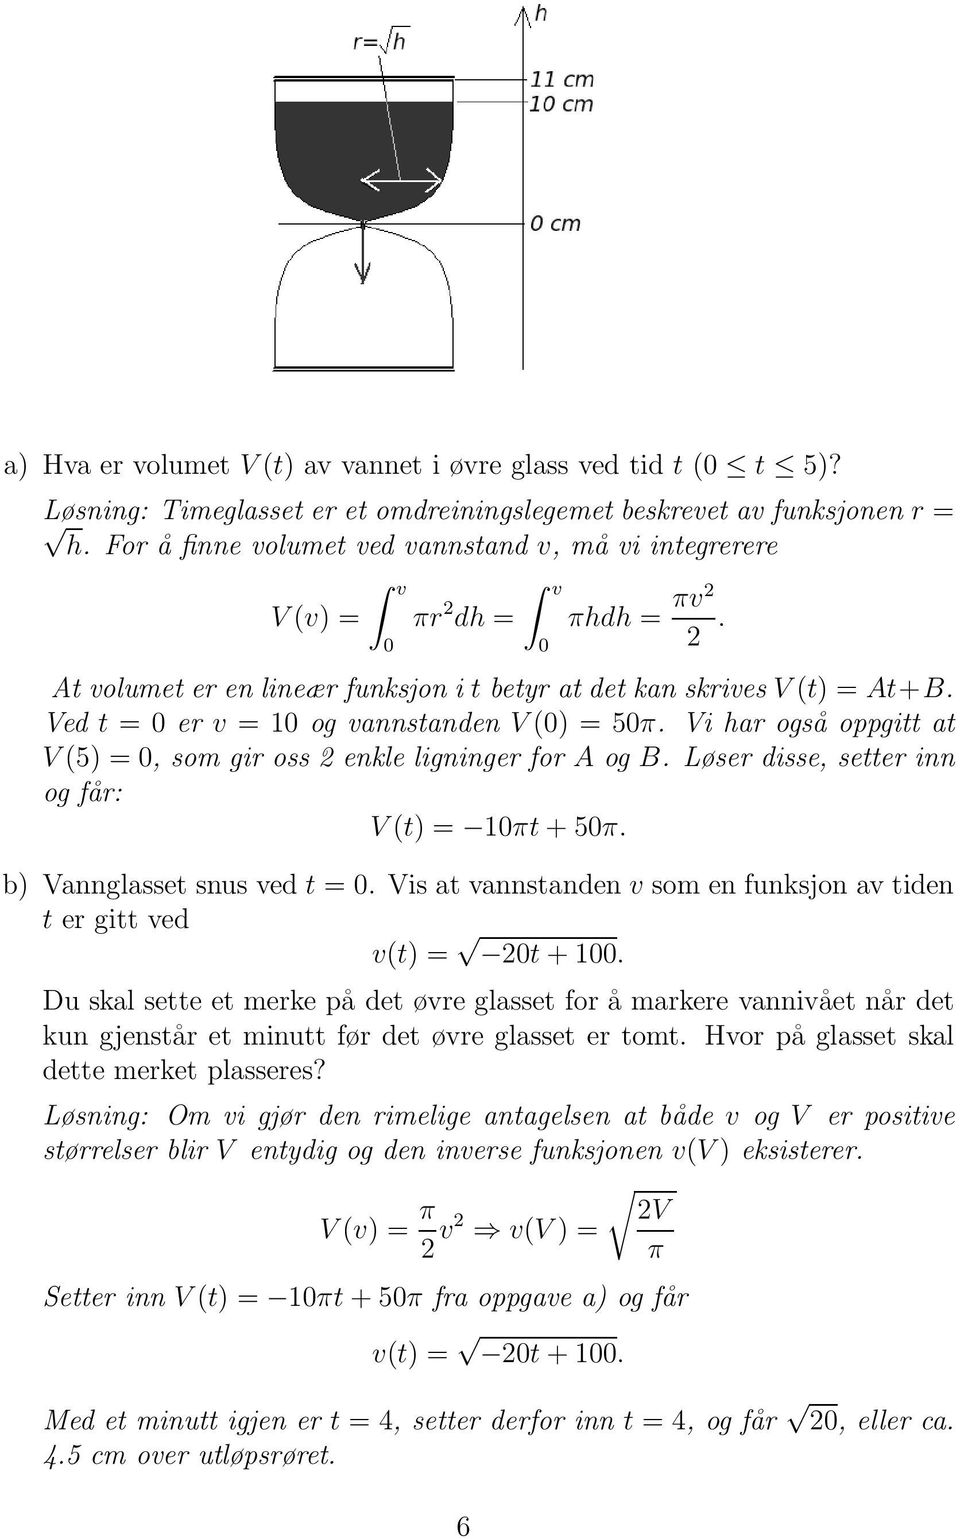 Ved t = 0 er v = 10 og vannstanden V (0) = 50π. Vi har også oppgitt at V (5) = 0, som gir oss 2 enkle ligninger for A og B. Løser disse, setter inn og får: V (t) = 10πt + 50π.